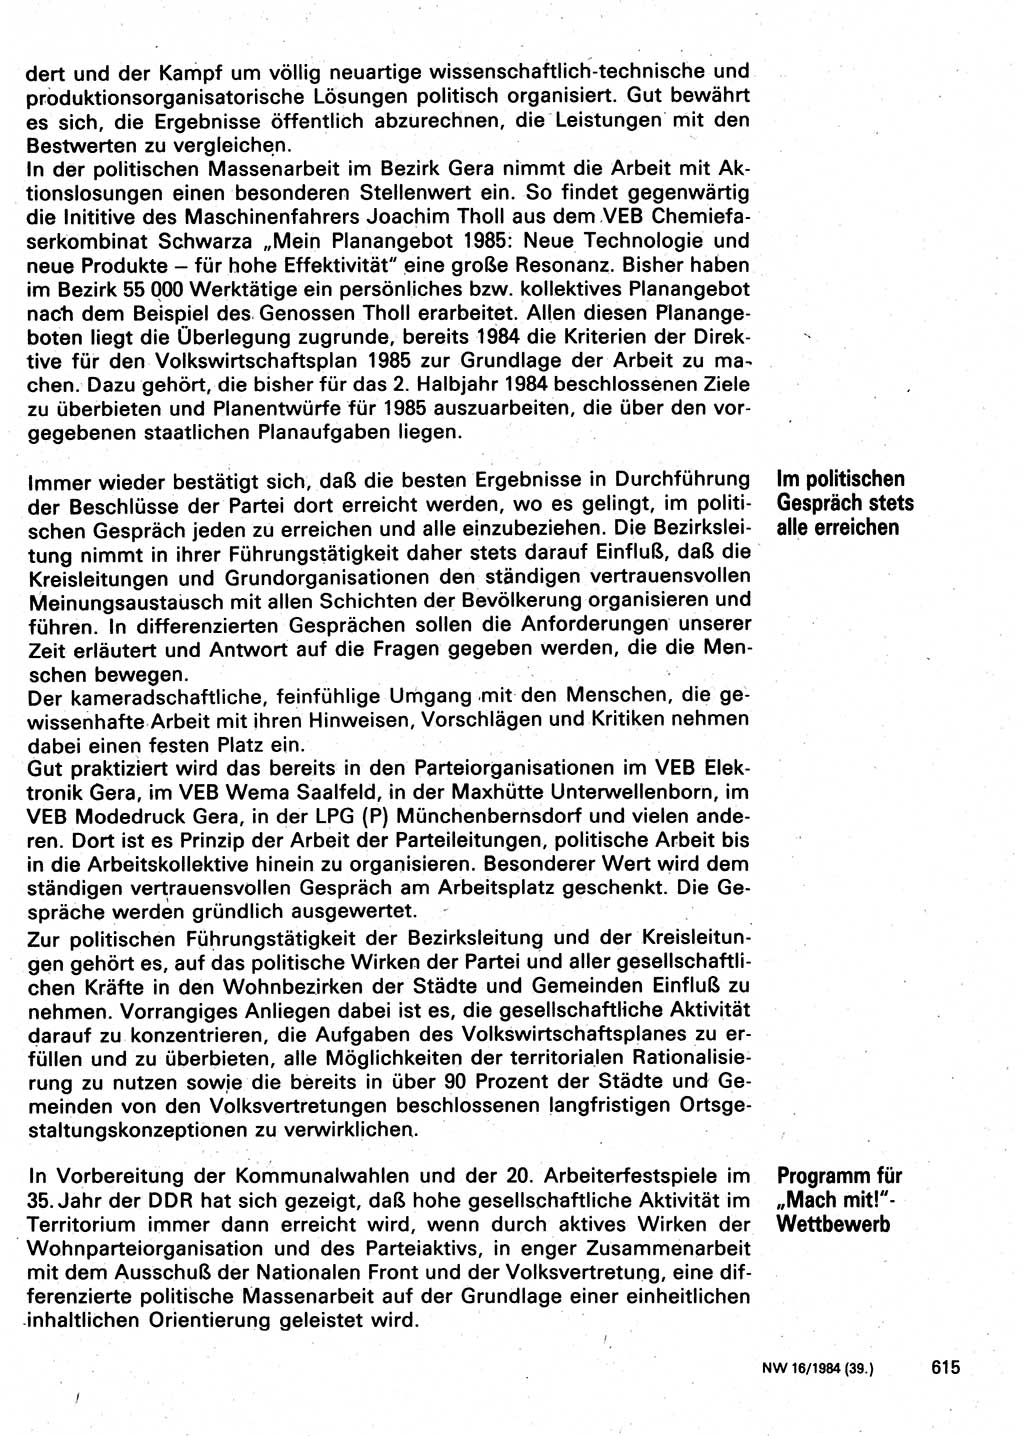 Neuer Weg (NW), Organ des Zentralkomitees (ZK) der SED (Sozialistische Einheitspartei Deutschlands) für Fragen des Parteilebens, 39. Jahrgang [Deutsche Demokratische Republik (DDR)] 1984, Seite 615 (NW ZK SED DDR 1984, S. 615)